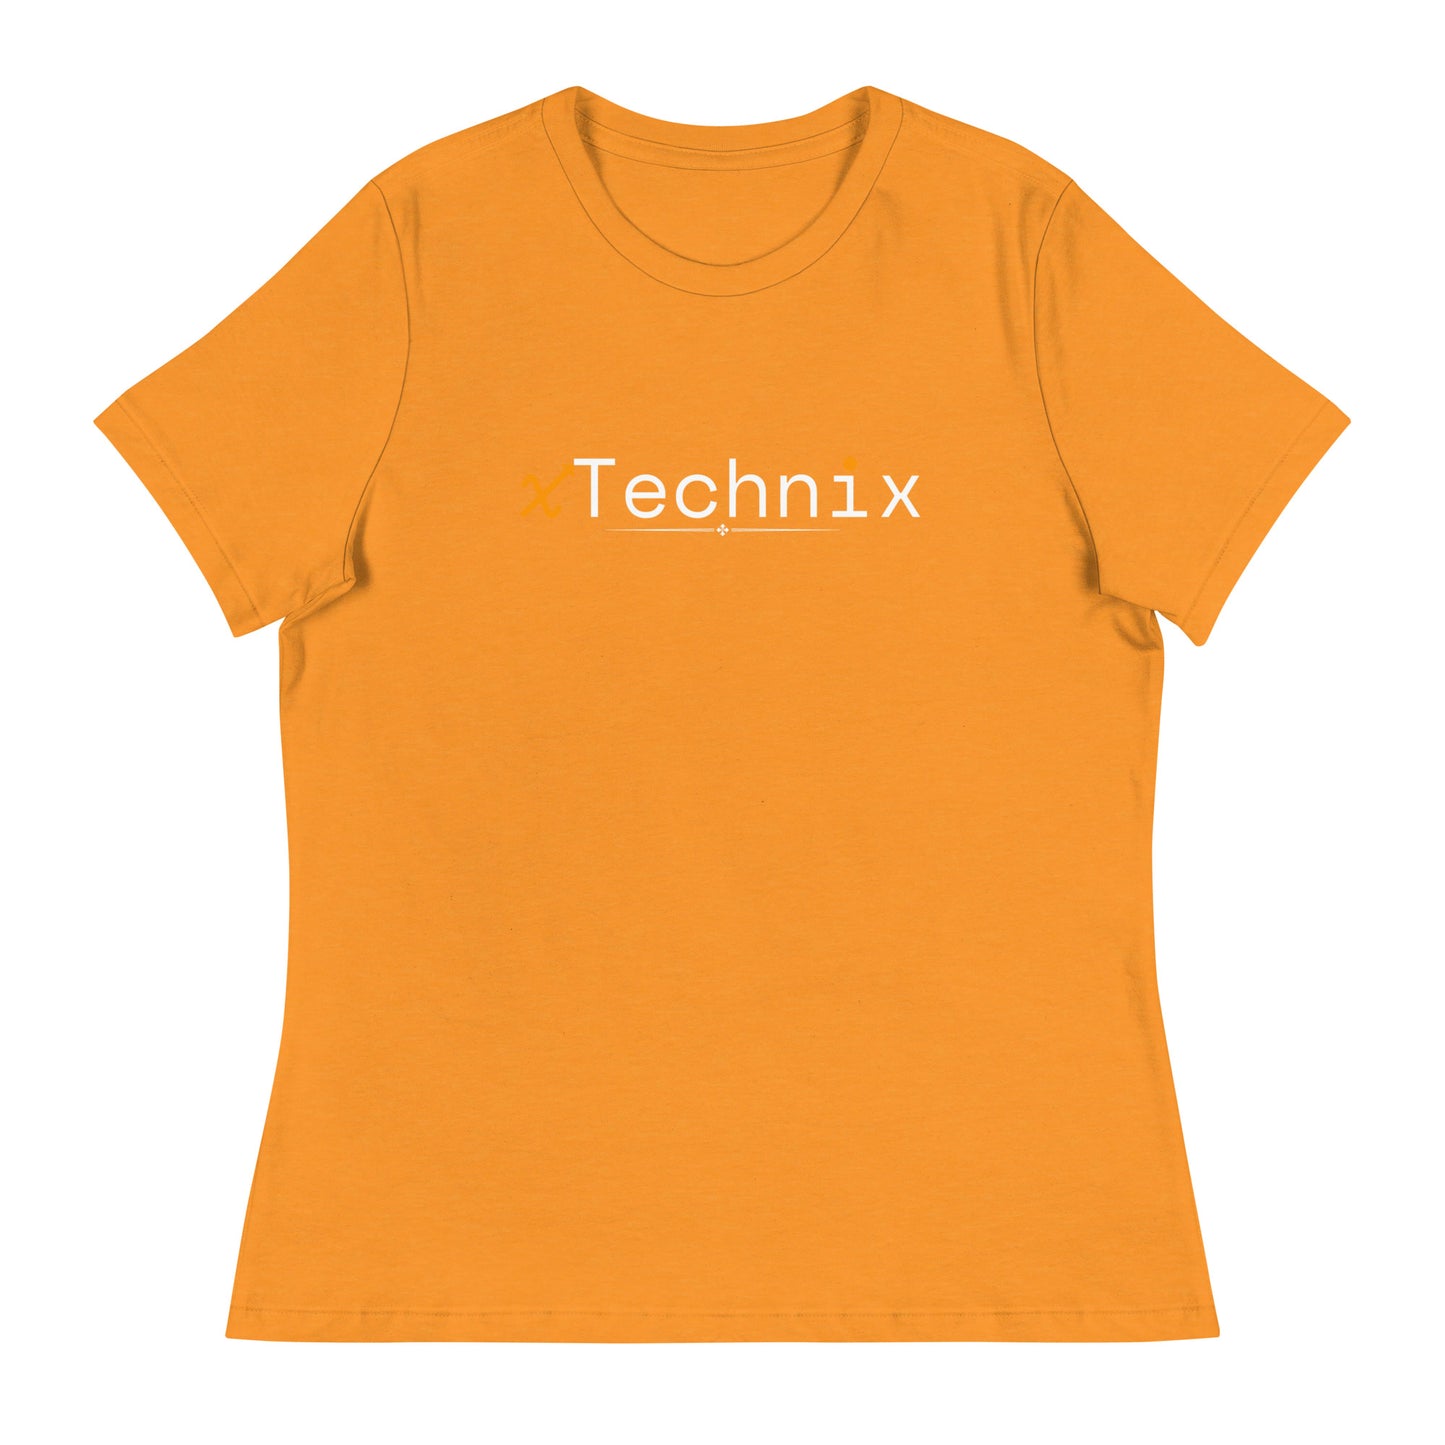 xTechhix Women's Relaxed T-Shirt